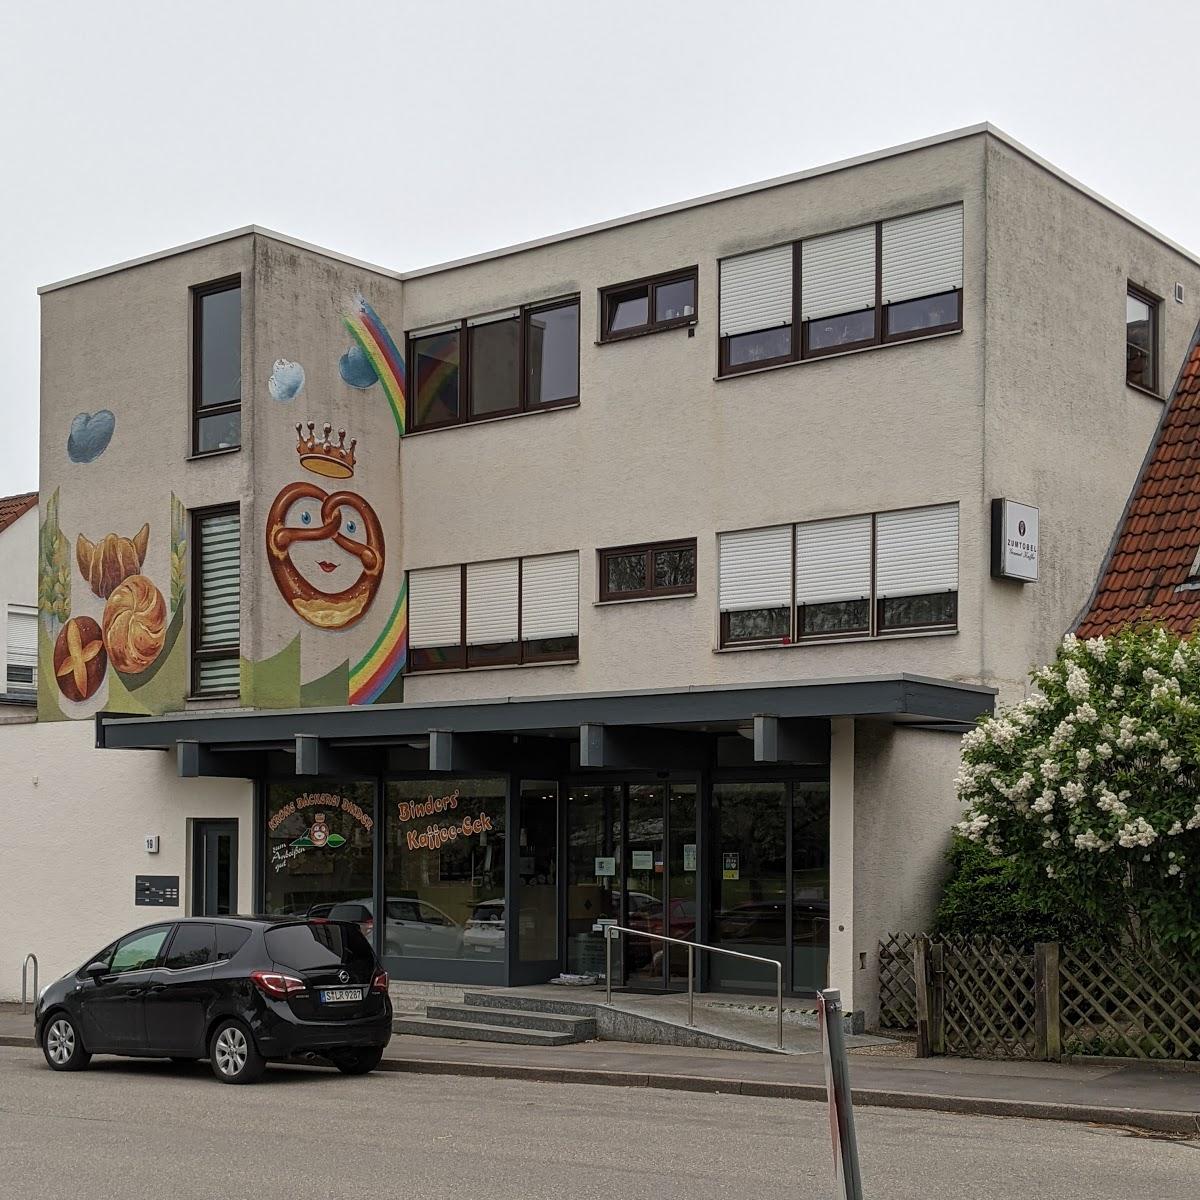 Restaurant "IBM Klub Restaurant" in  Böblingen